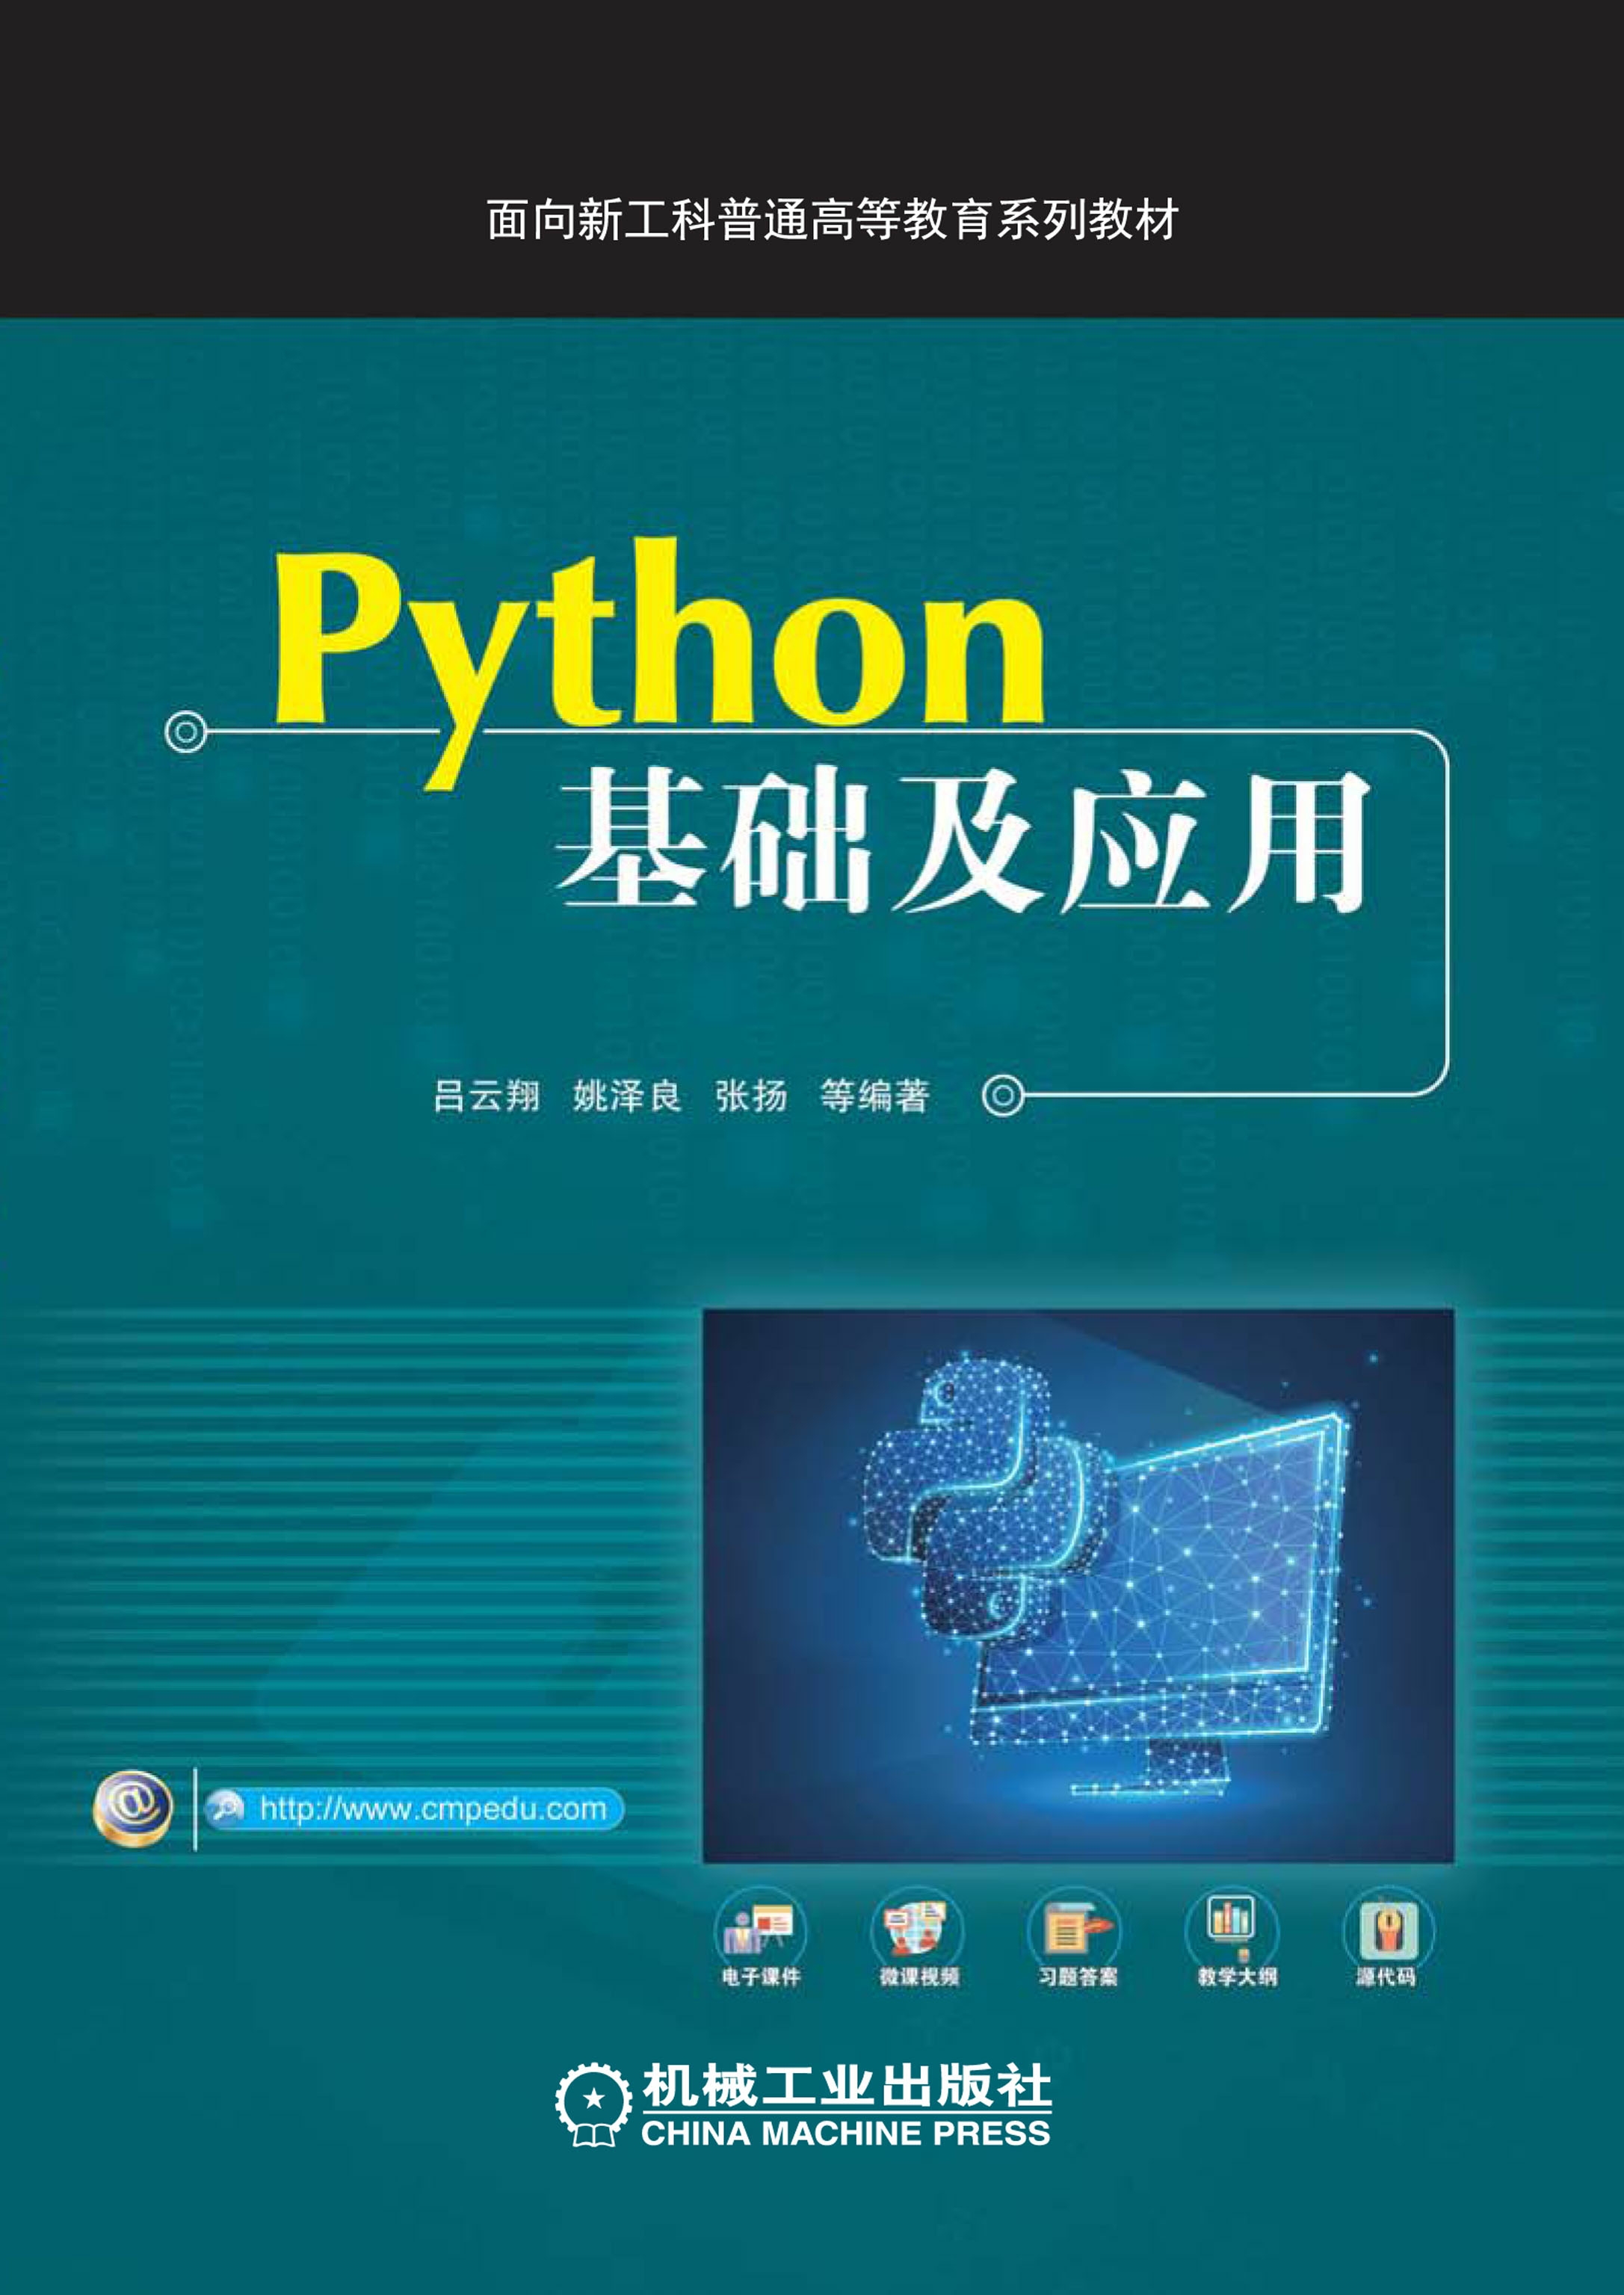 Python基础及应用